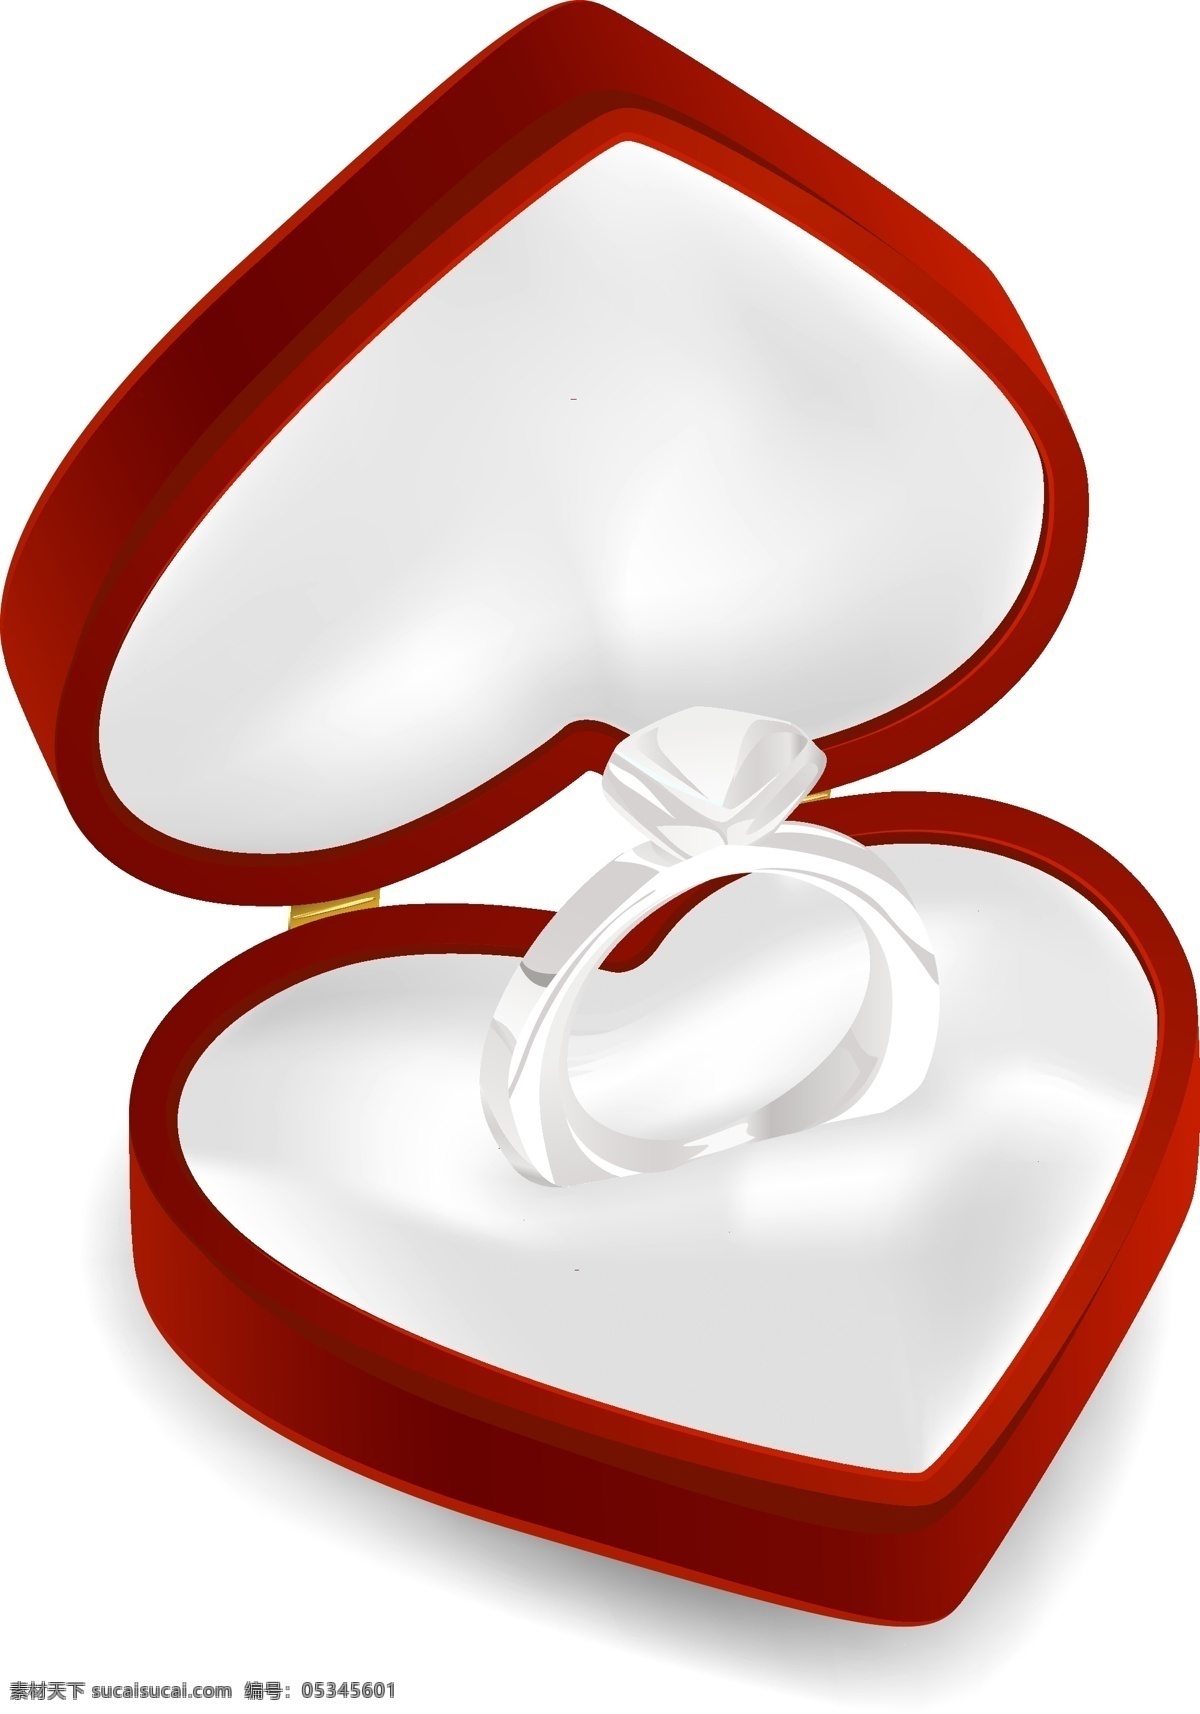 心形戒指元素 红色 心形 礼盒 钻石 戒指 求婚